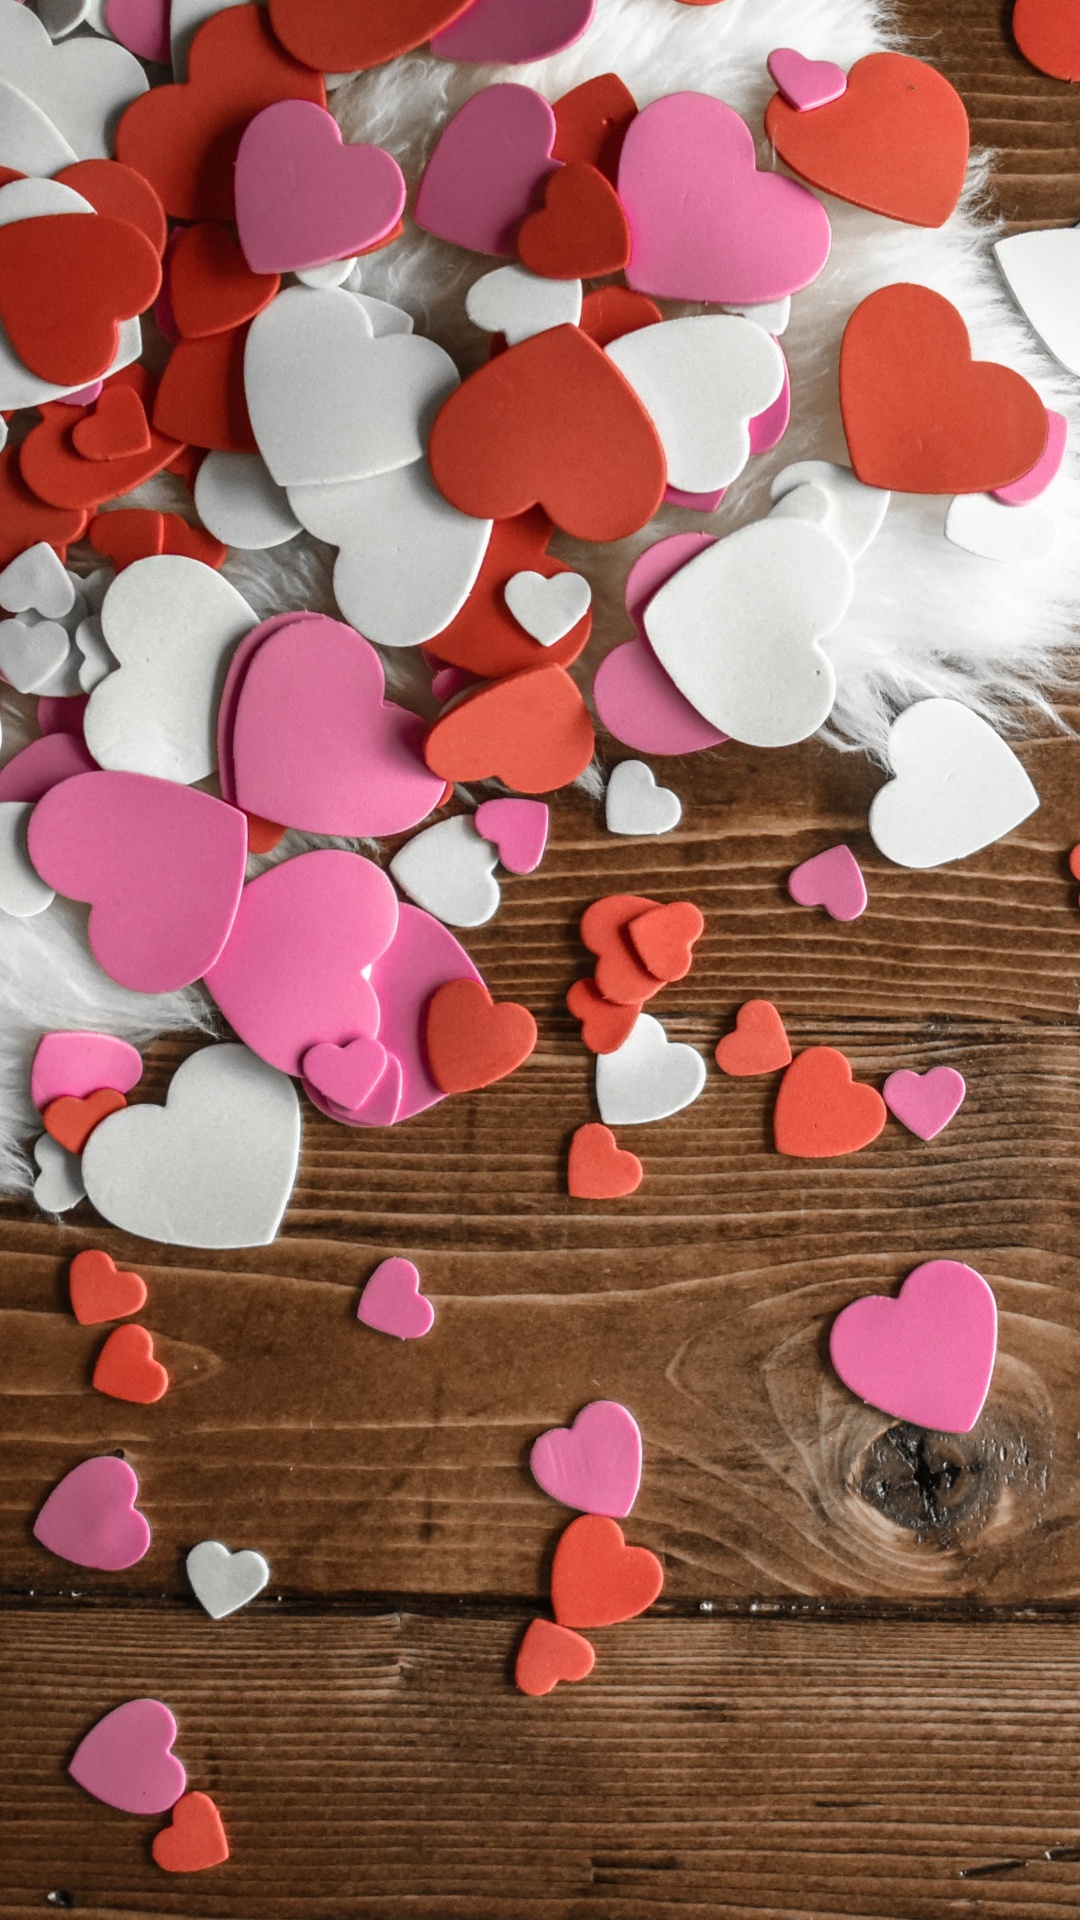 礼物, 心脏, 粉红色, 木, 爱情 壁纸 1080x1920 允许